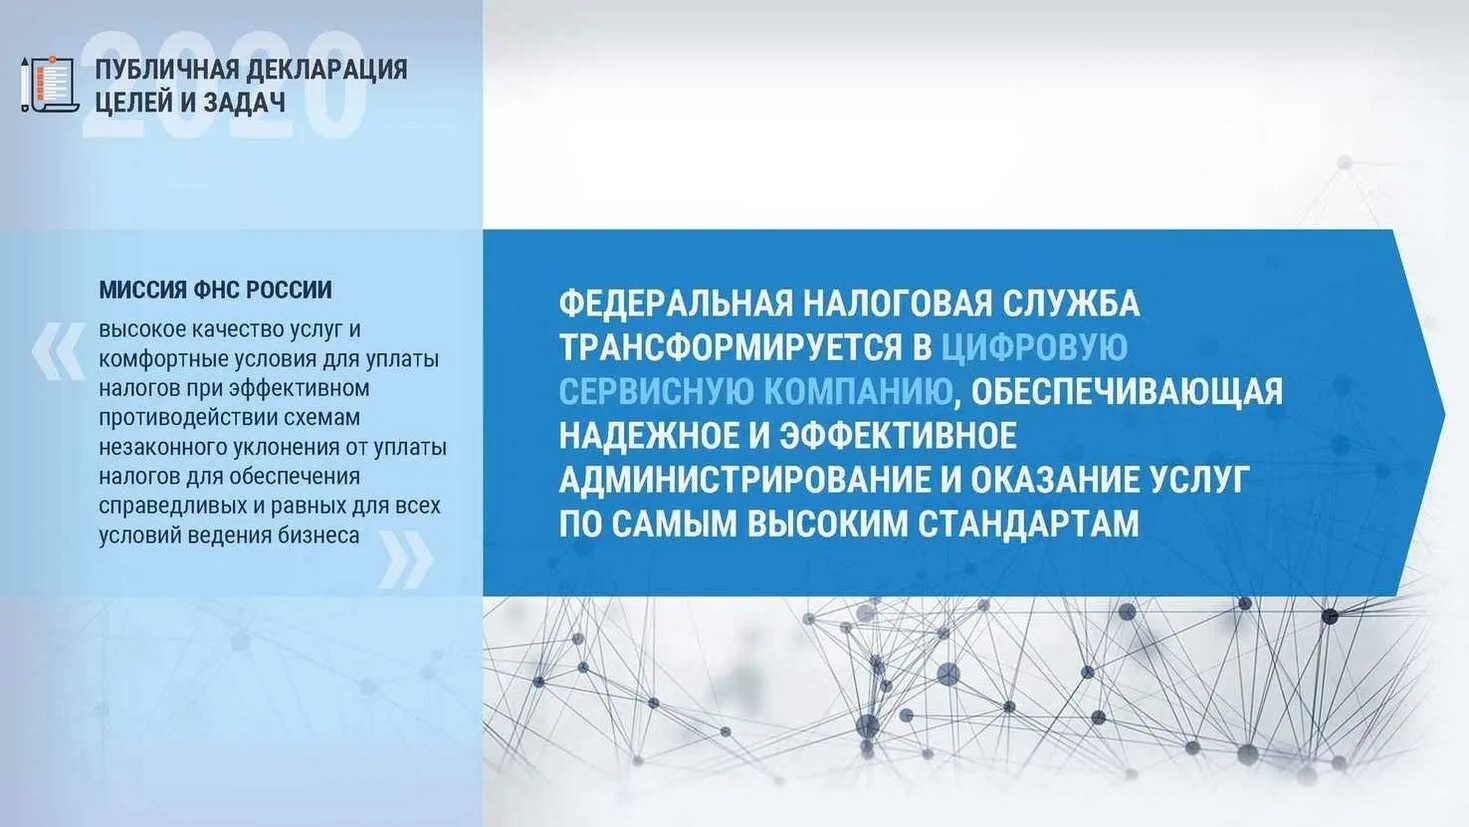 Публичная декларация целей и задач ФНС России на 2023 год. Декларация целей и задач Министерства финансов.